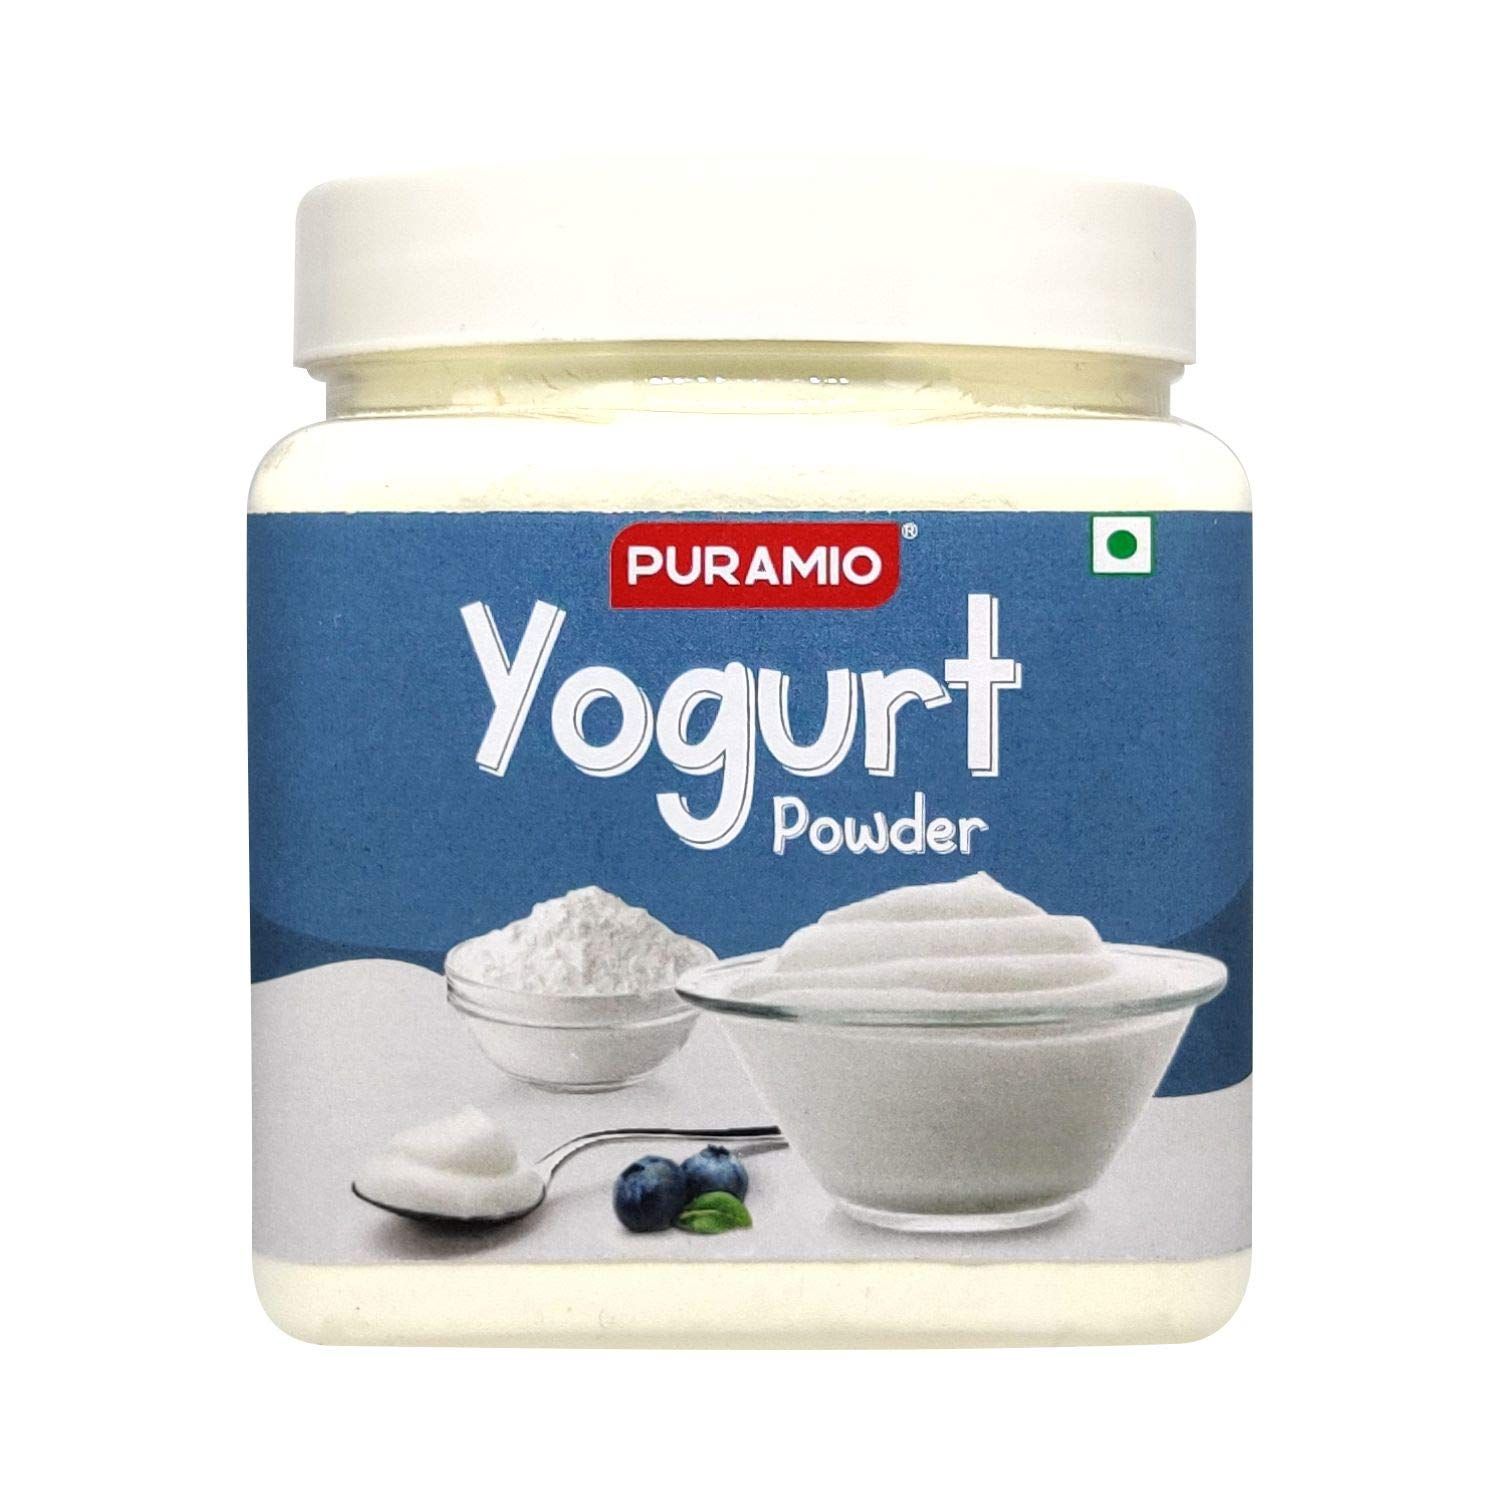 Puramio Yogurt Powder Image